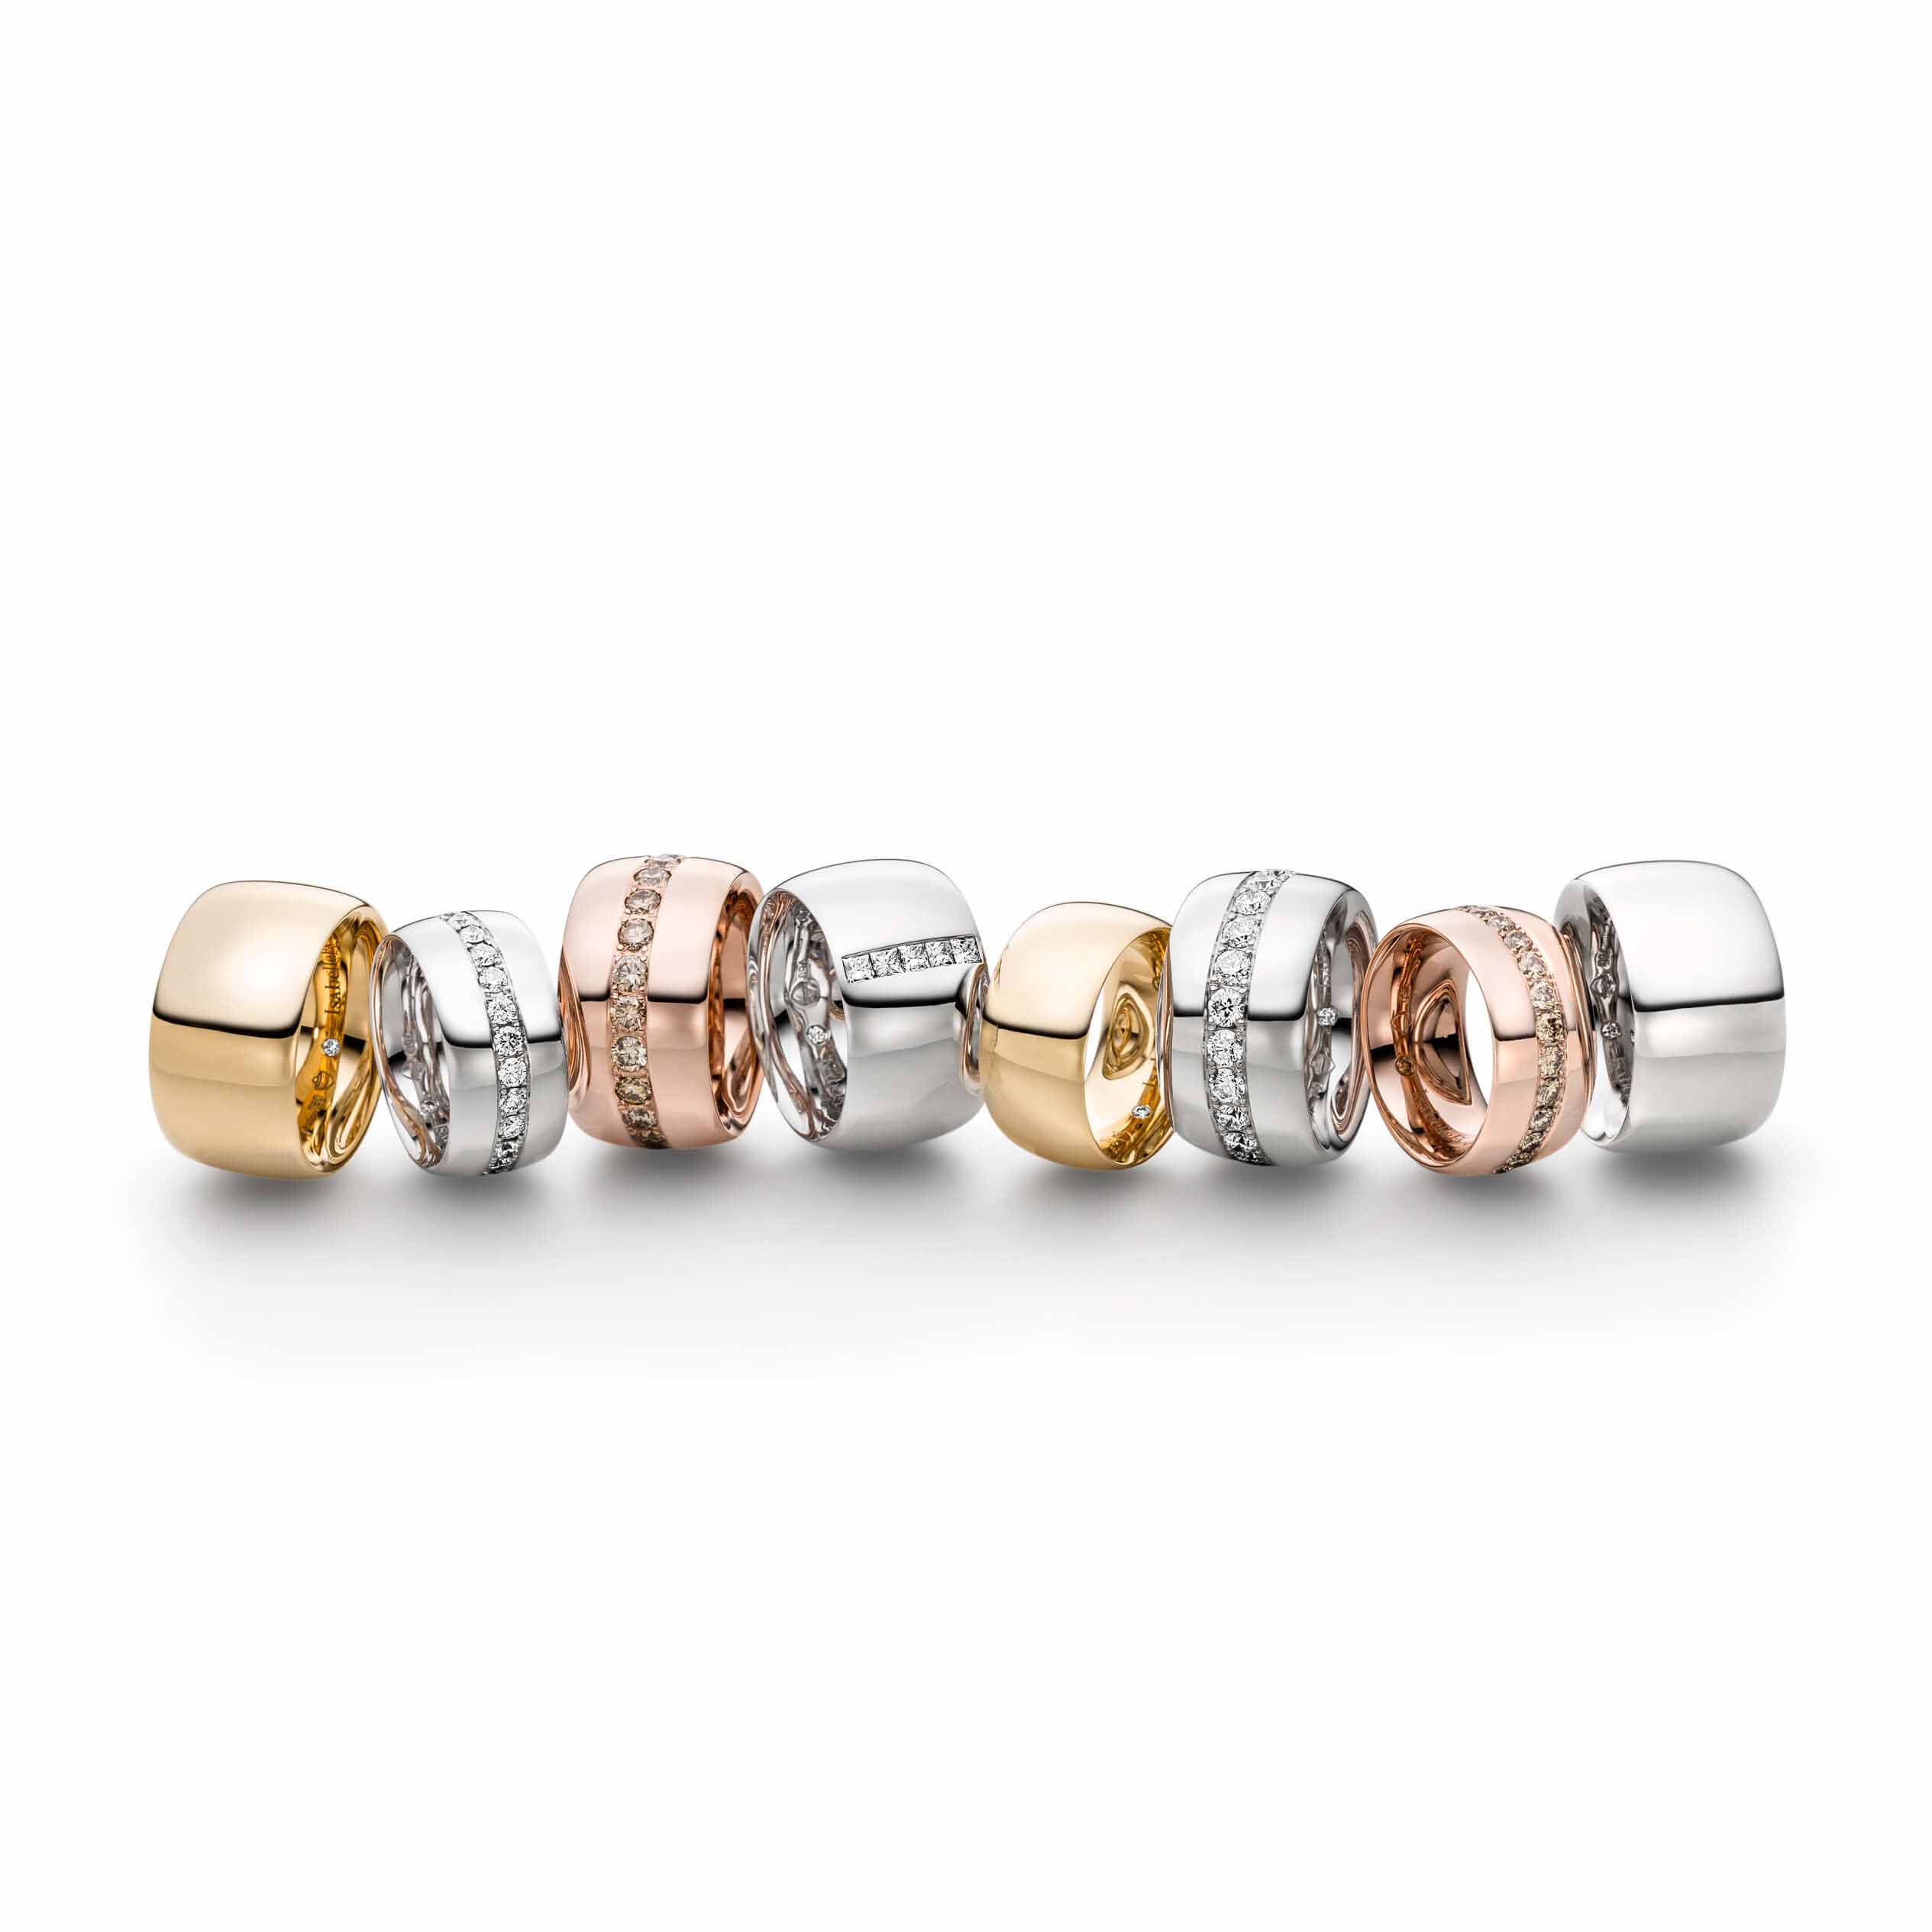 Groothandel mode persoonlike OEM / ODM Juweliersware CZ ring sterling silwer juweliersware groothandel vervaardiger